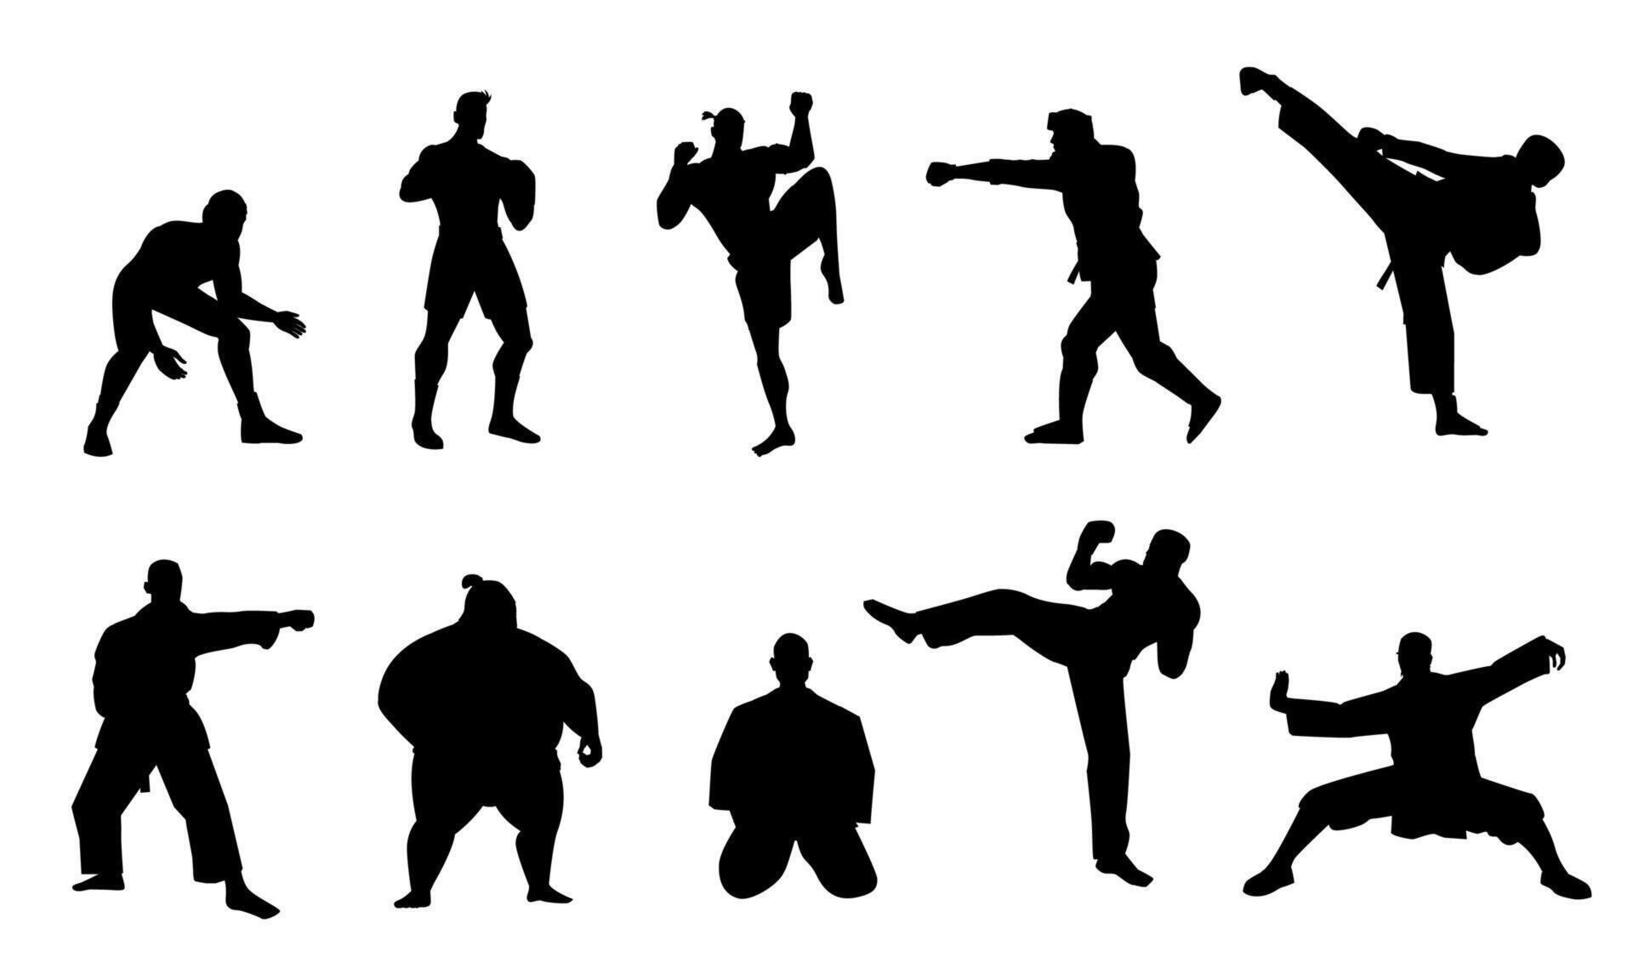 marcial luchadores siluetas negro Atletas caracteres puñetazo oponentes y combate, tradicional lucha letras concepto. vector colección